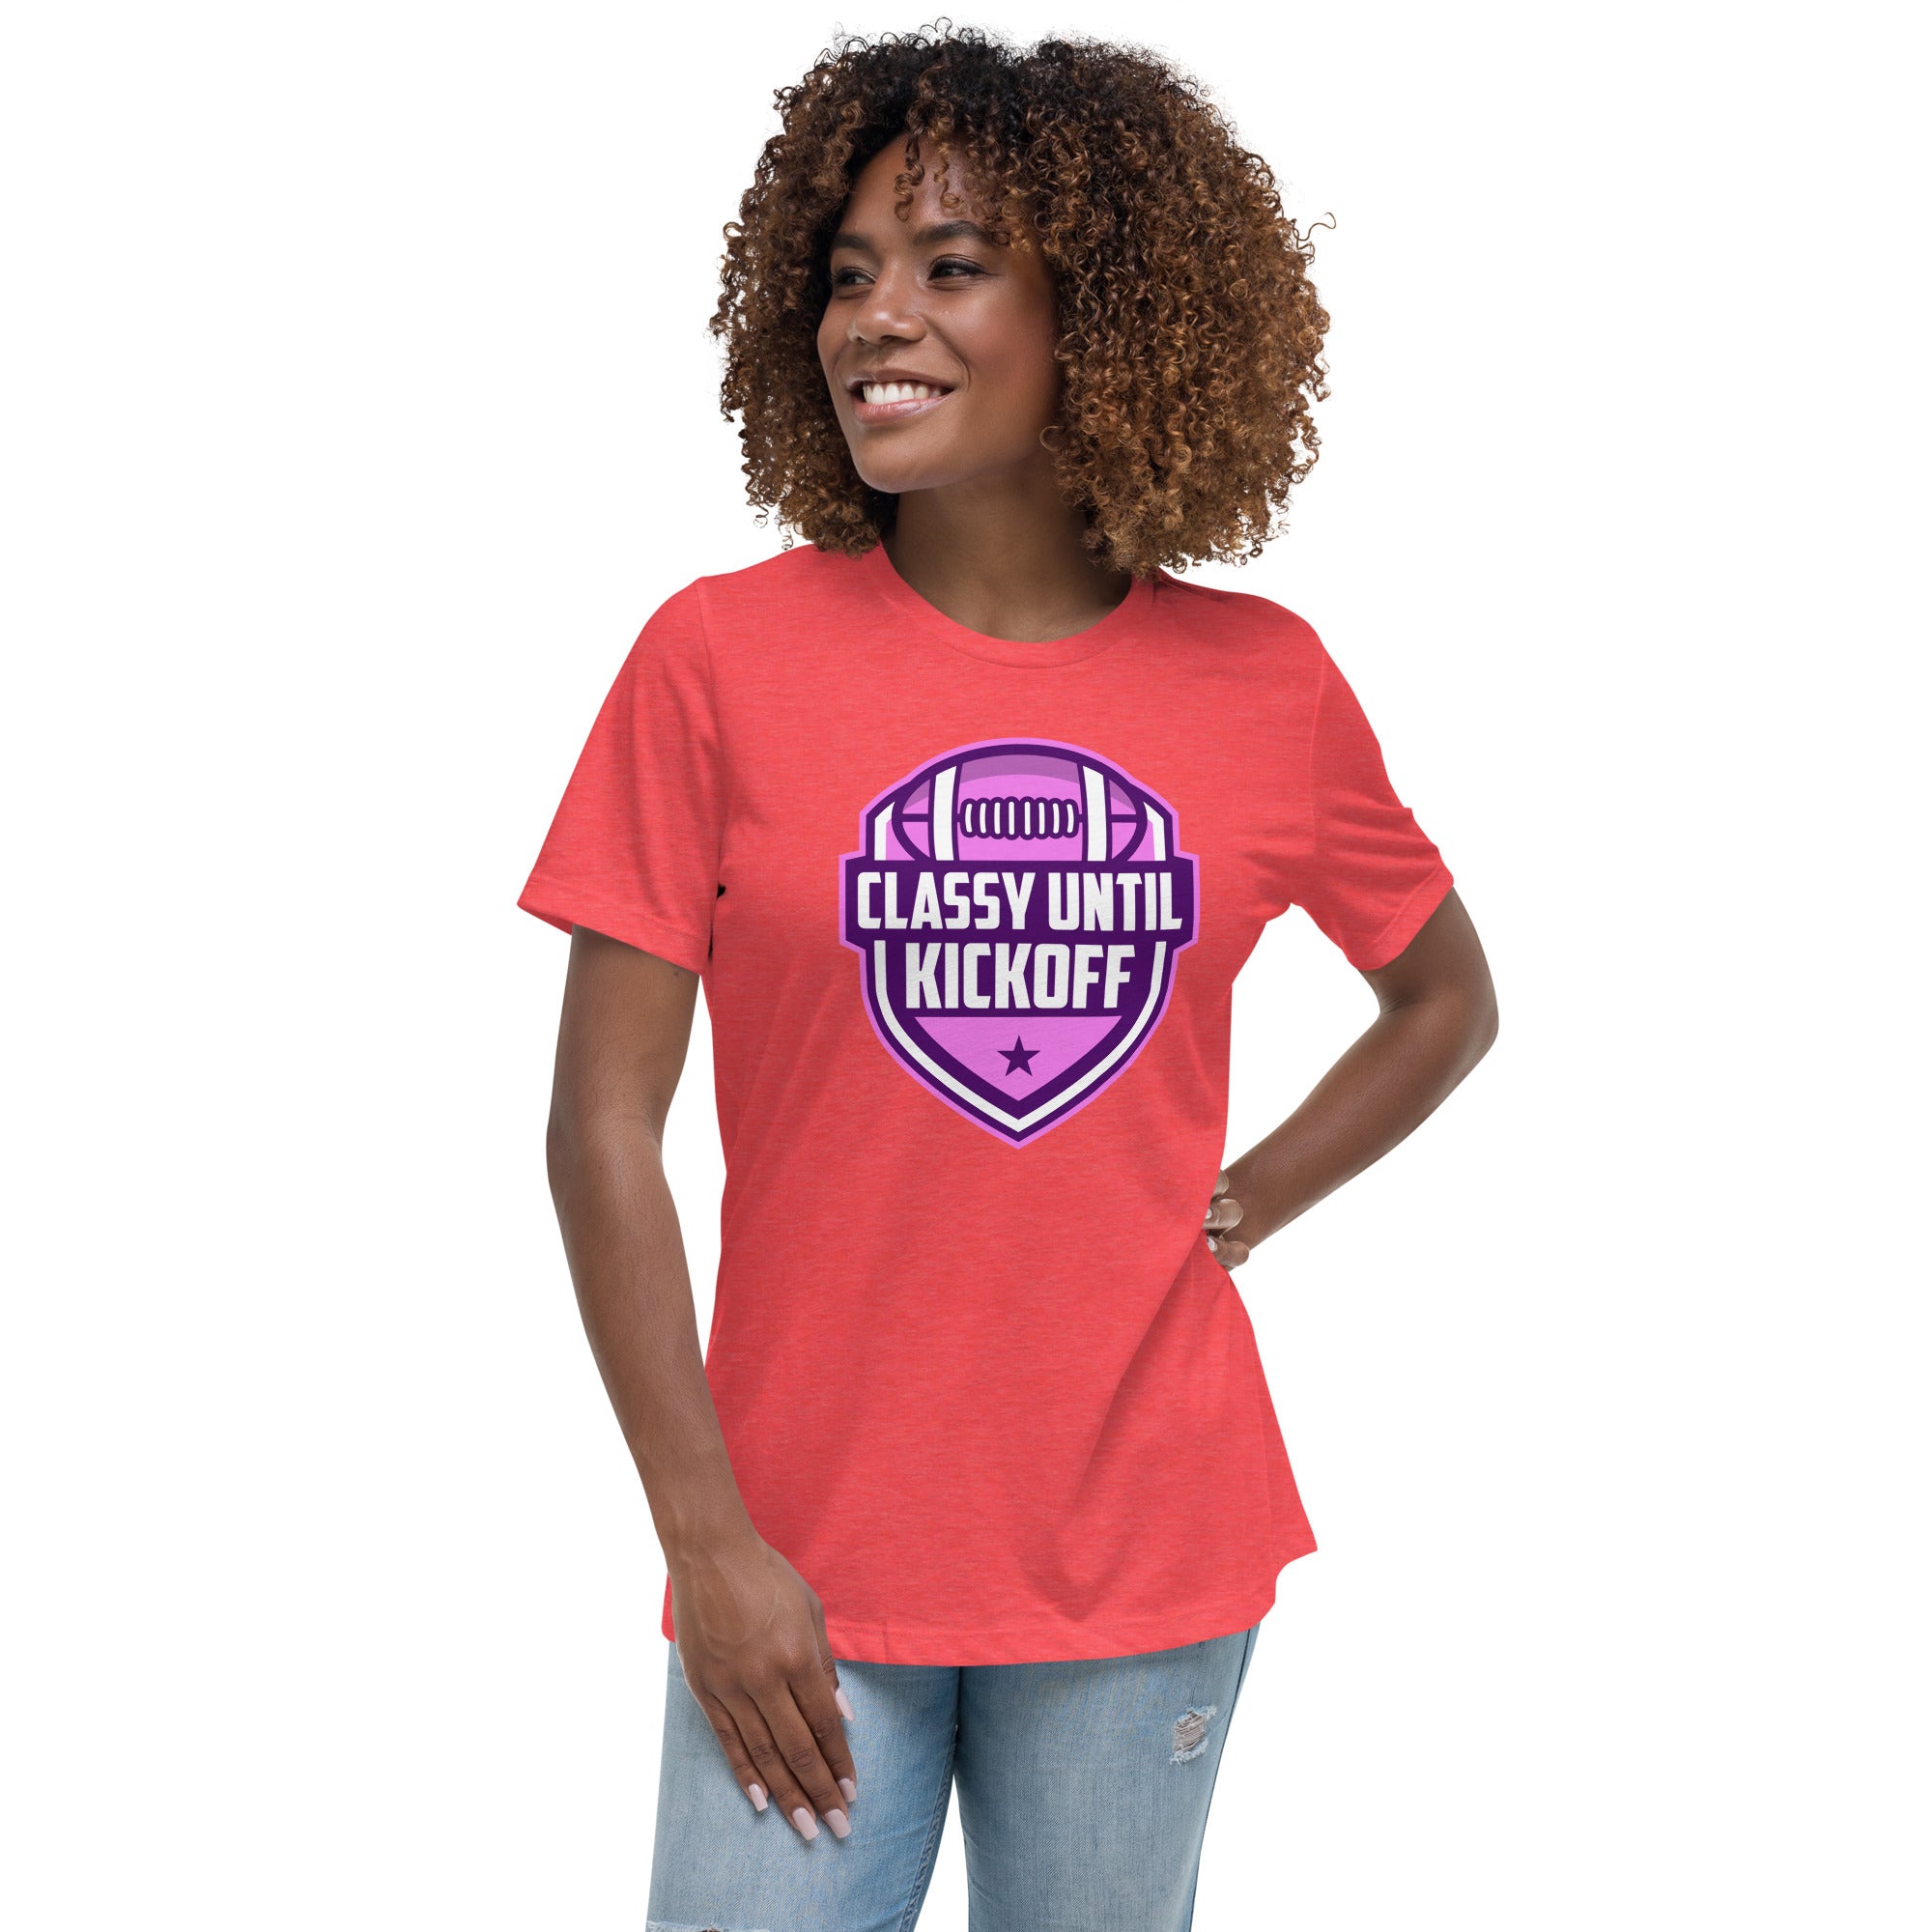 Classy Until KickOff Women's Premium Fit T-Shirt